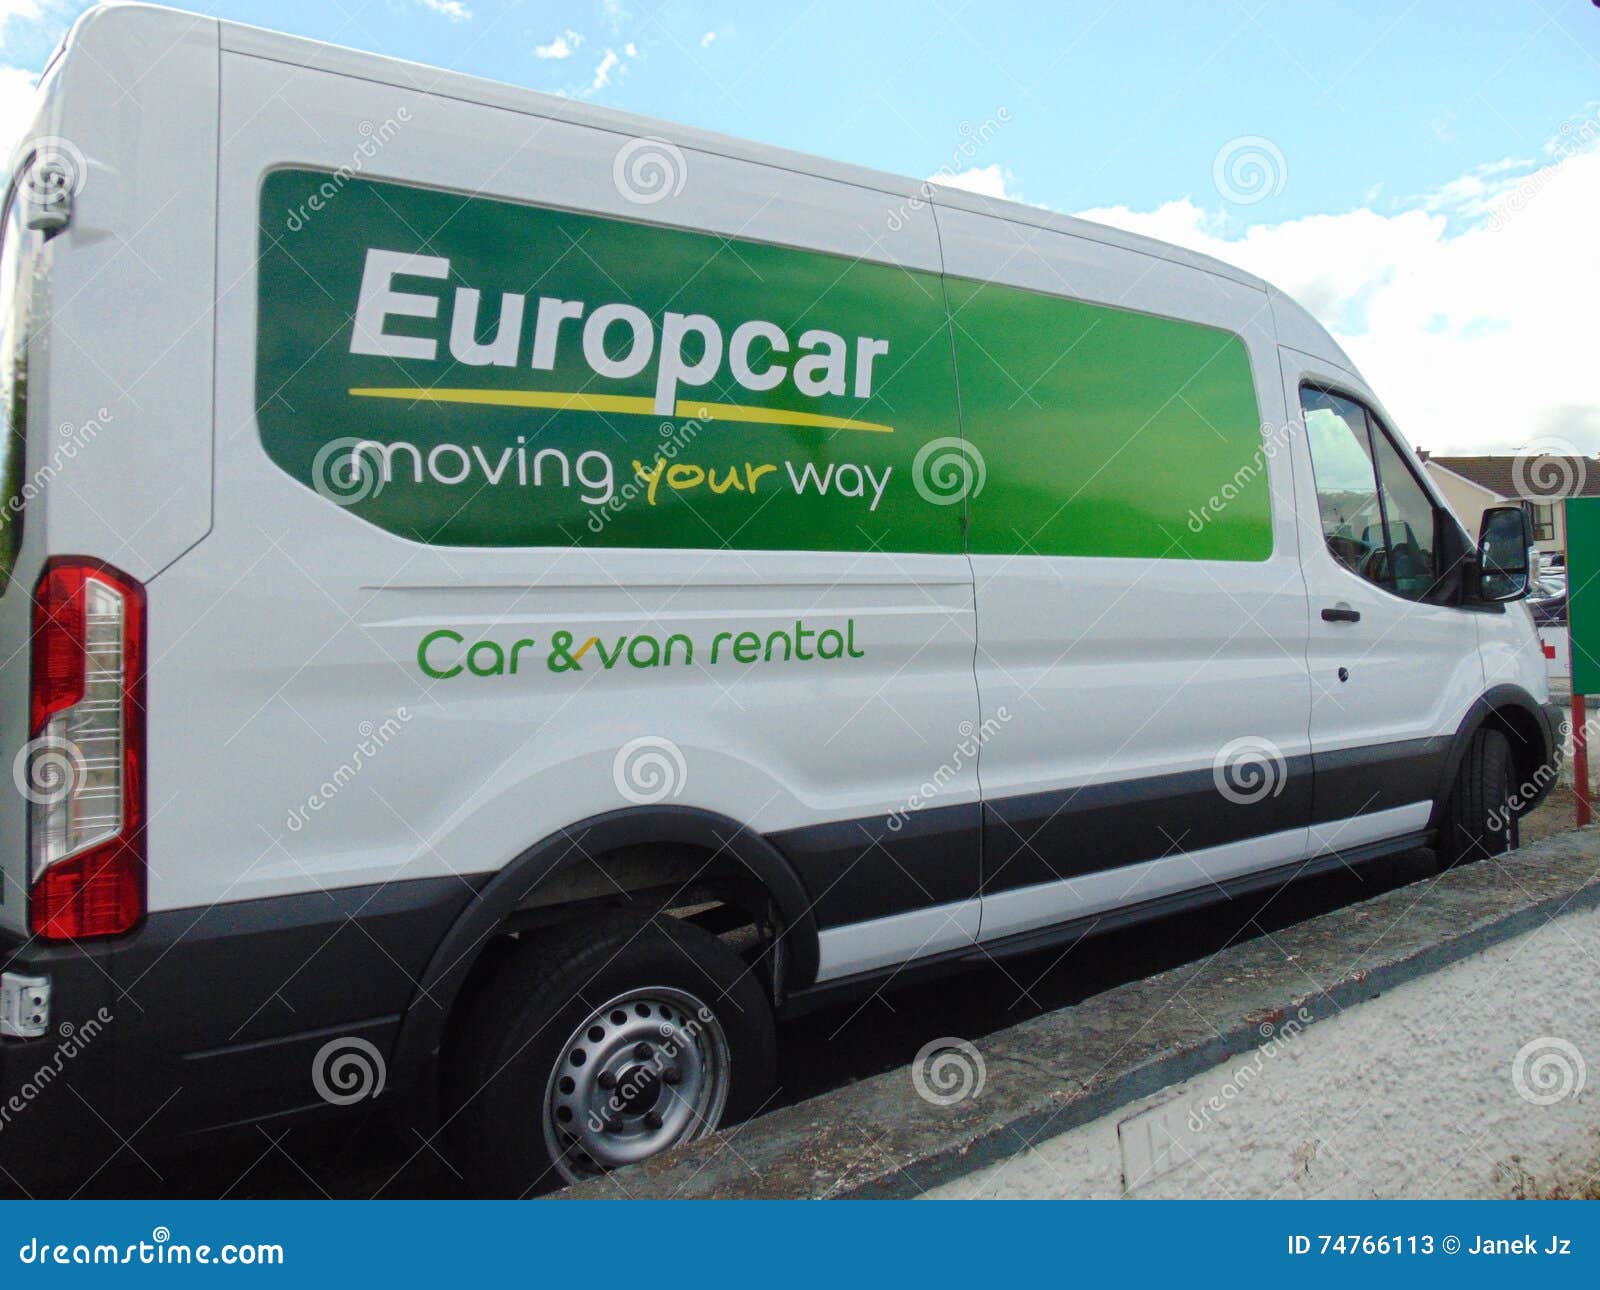 europcar van hire